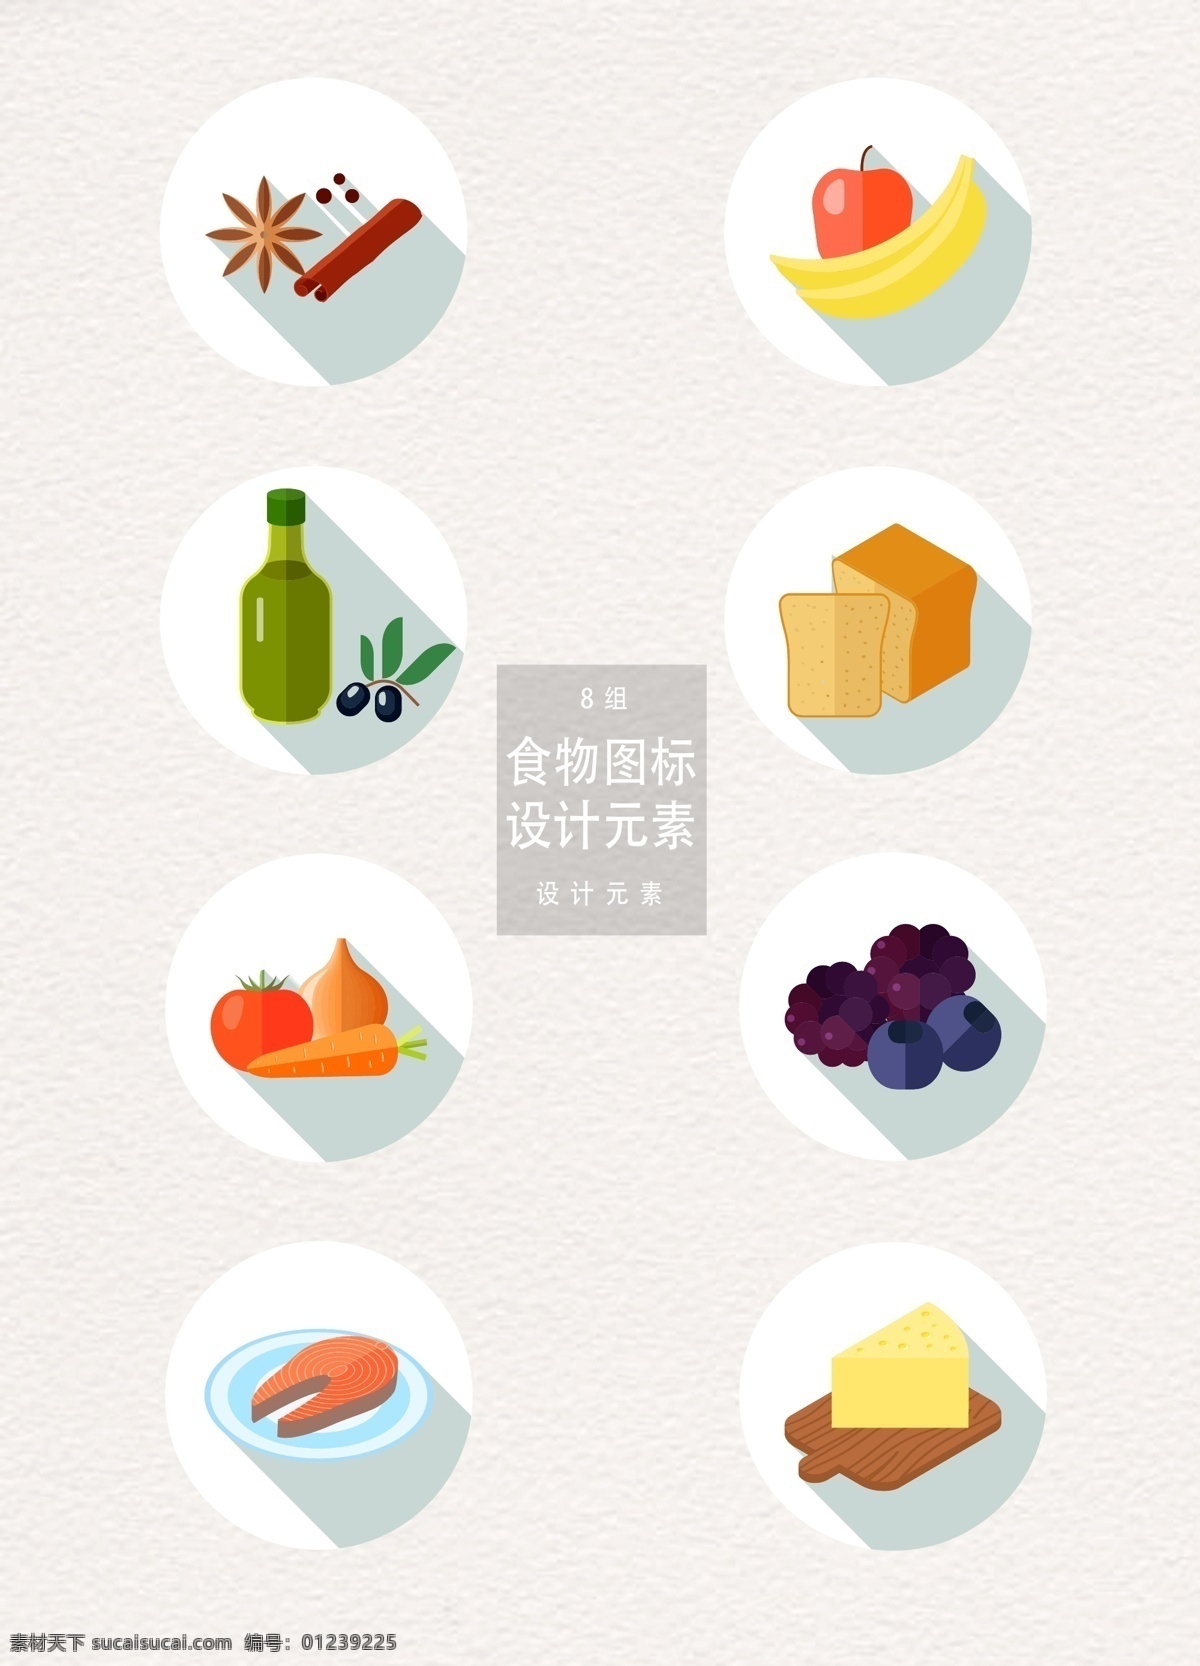 矢量 扁平 食物 图标 元素 设计元素 苹果 面包 蔬菜 蓝莓 食物图标 图标设计 扁平食物 ai素材 香料 八角 水果 香蕉 橄榄油 芝士